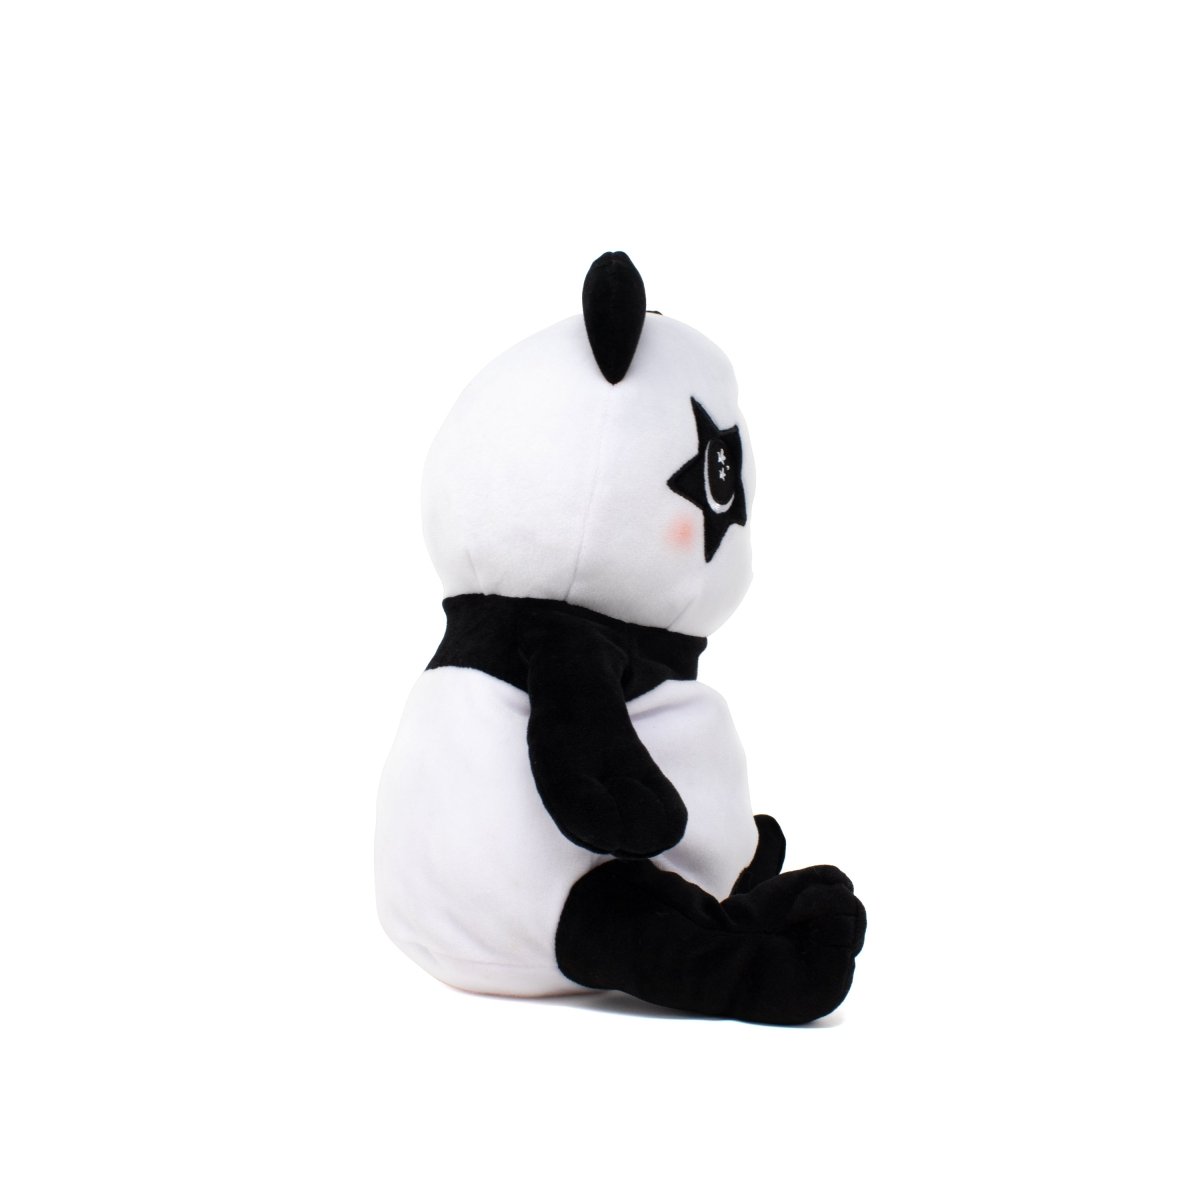 Pandy the Panda Plushie Starlight Buddy